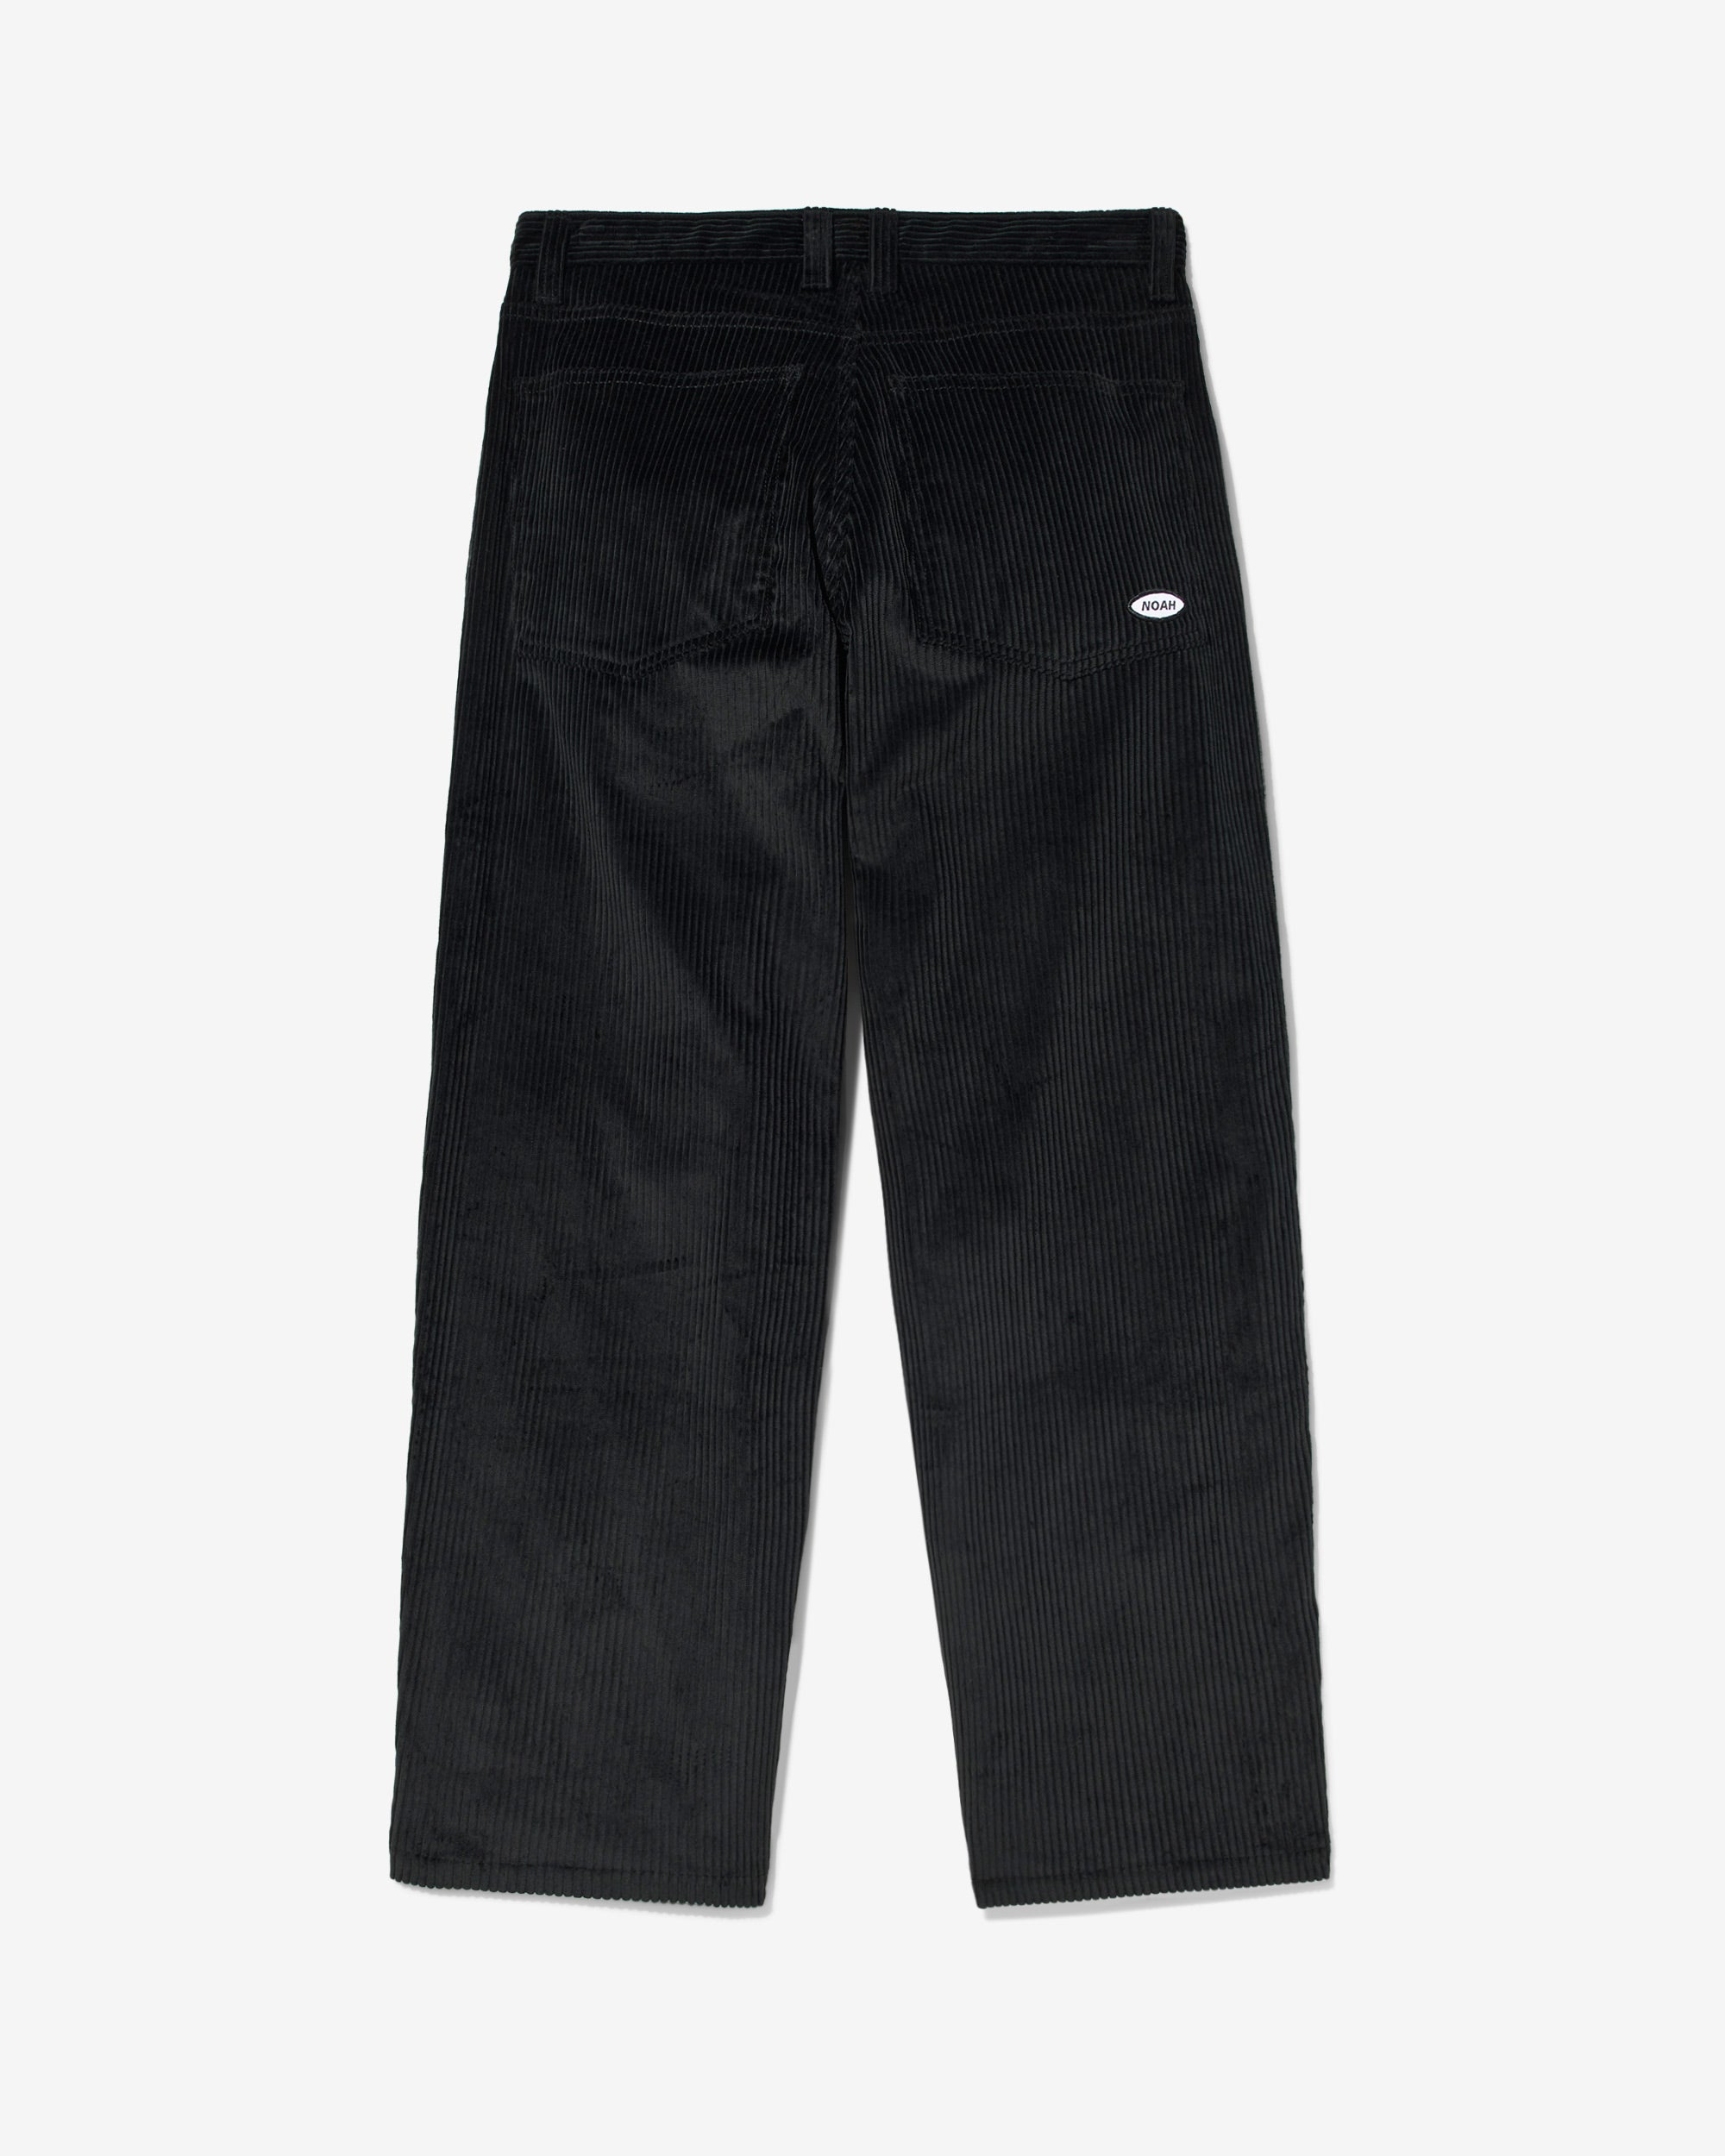 Wide-Wale Corduroy Jeans - Noah